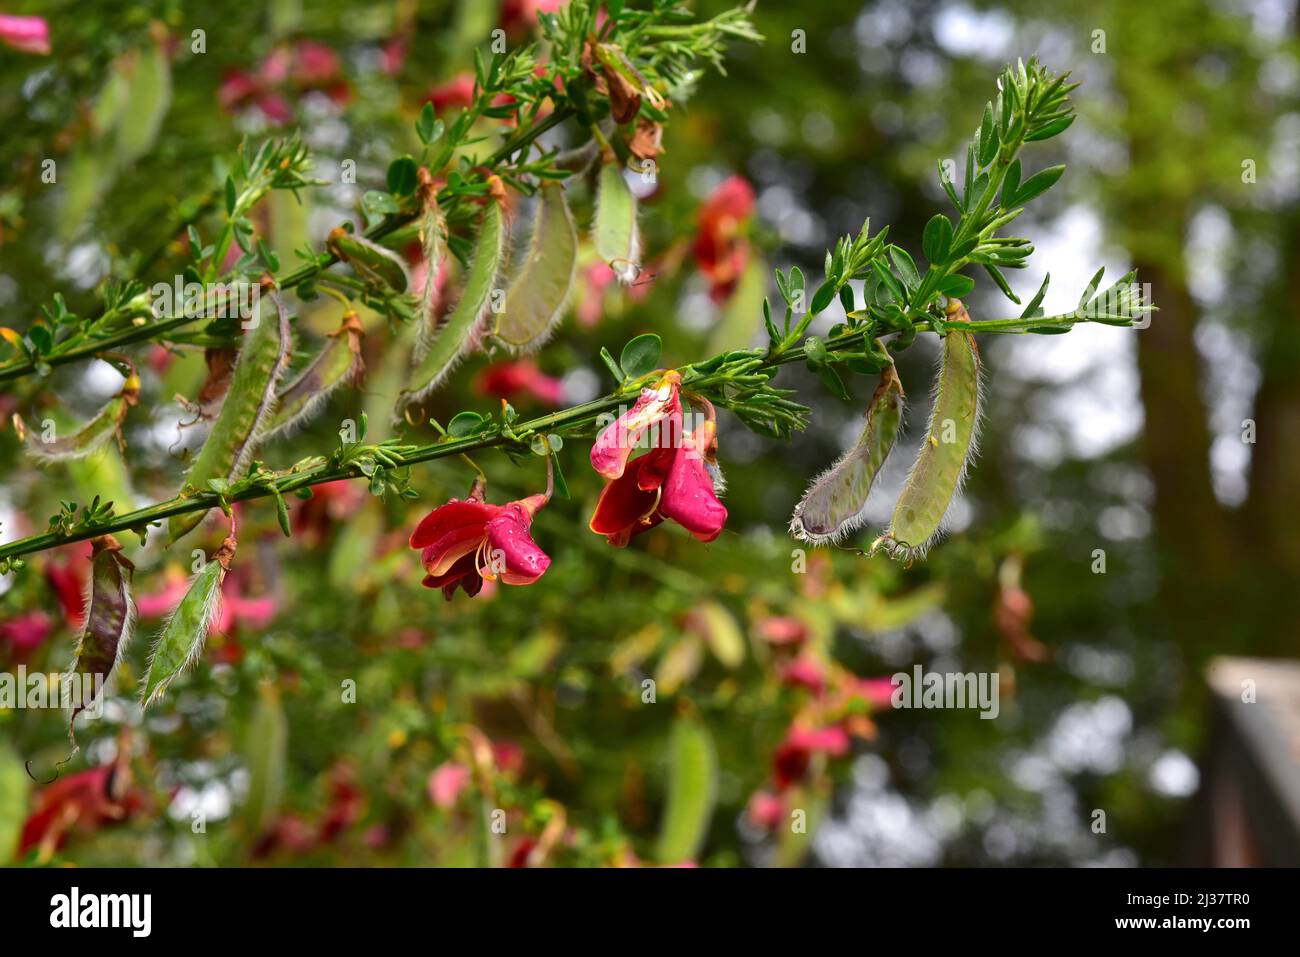 El escoba común (Cytisus scopararius o Sarothamnus scoparus) es un arbusto caducifolio nativo de Europa y naturalizado en muchas otras regiones. El salvaje Foto de stock